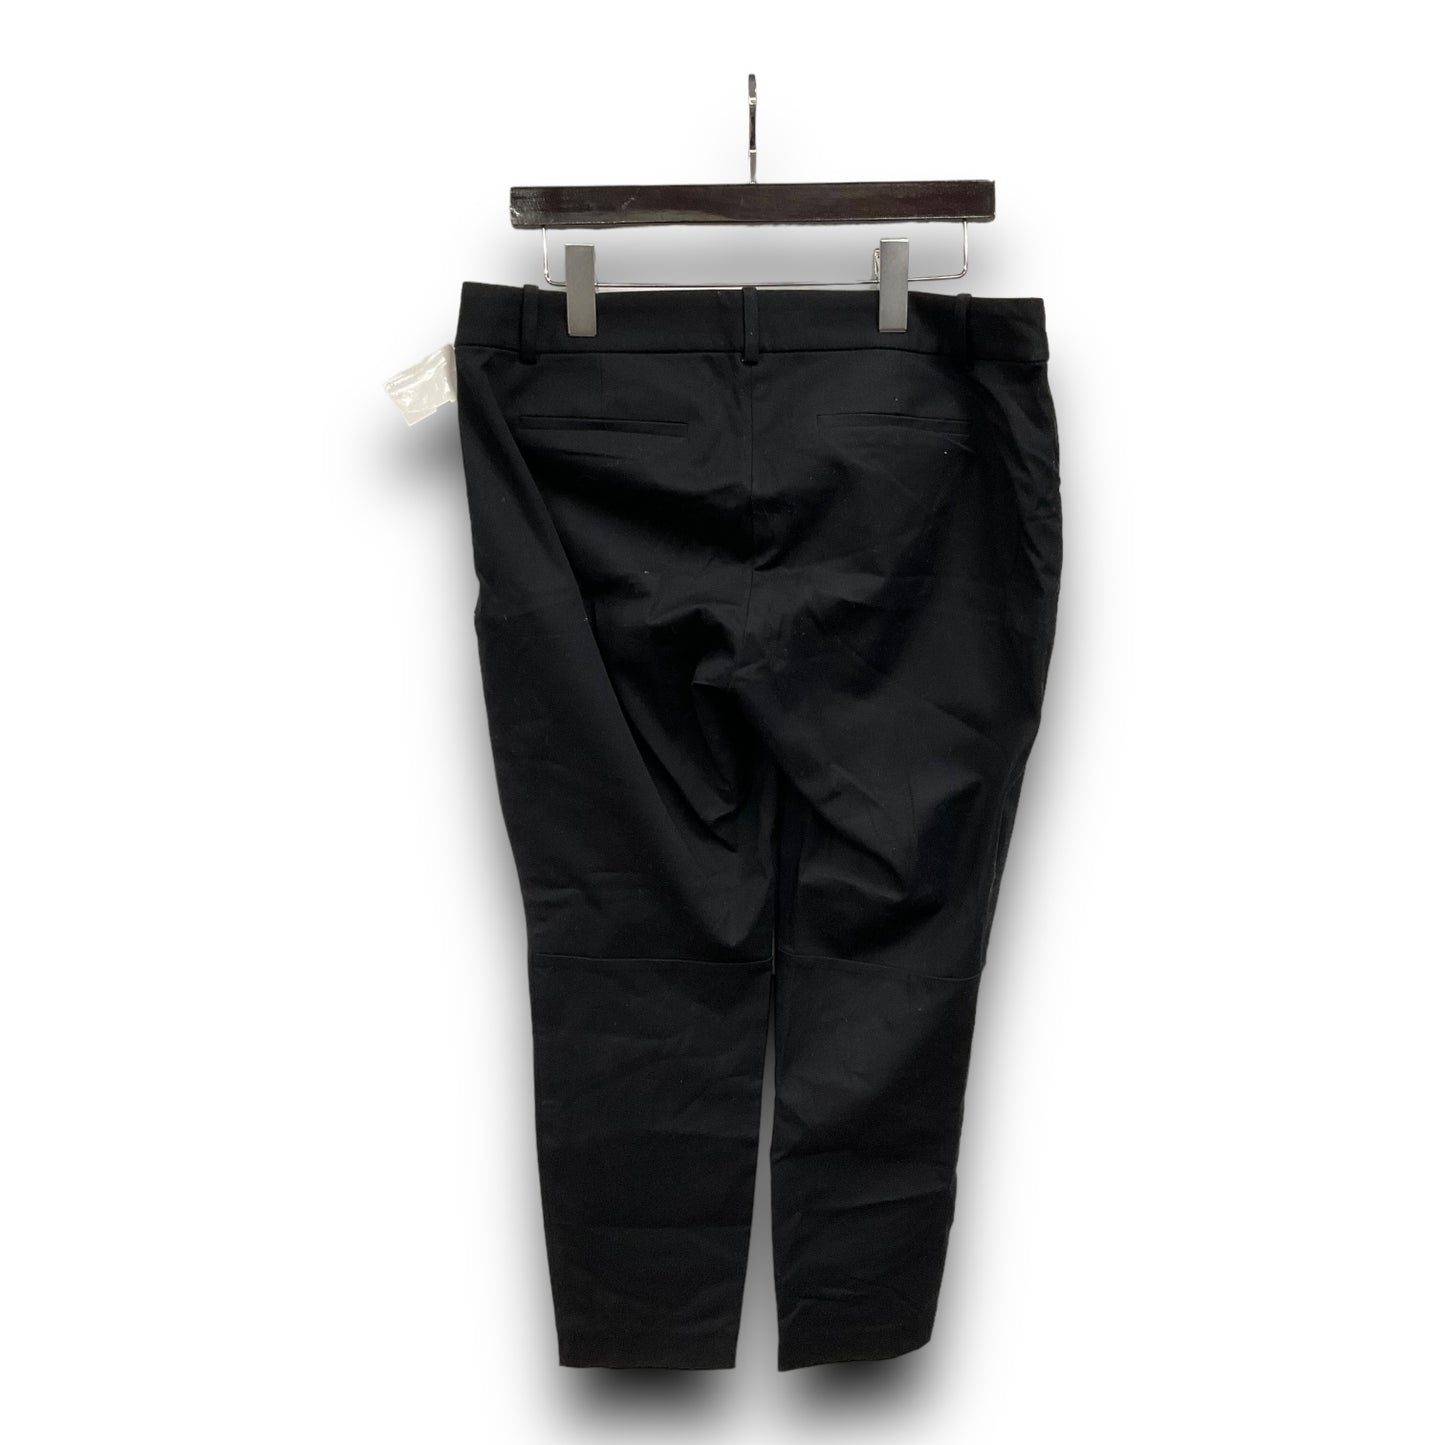 Pants Work/dress By J Crew  Size: 12